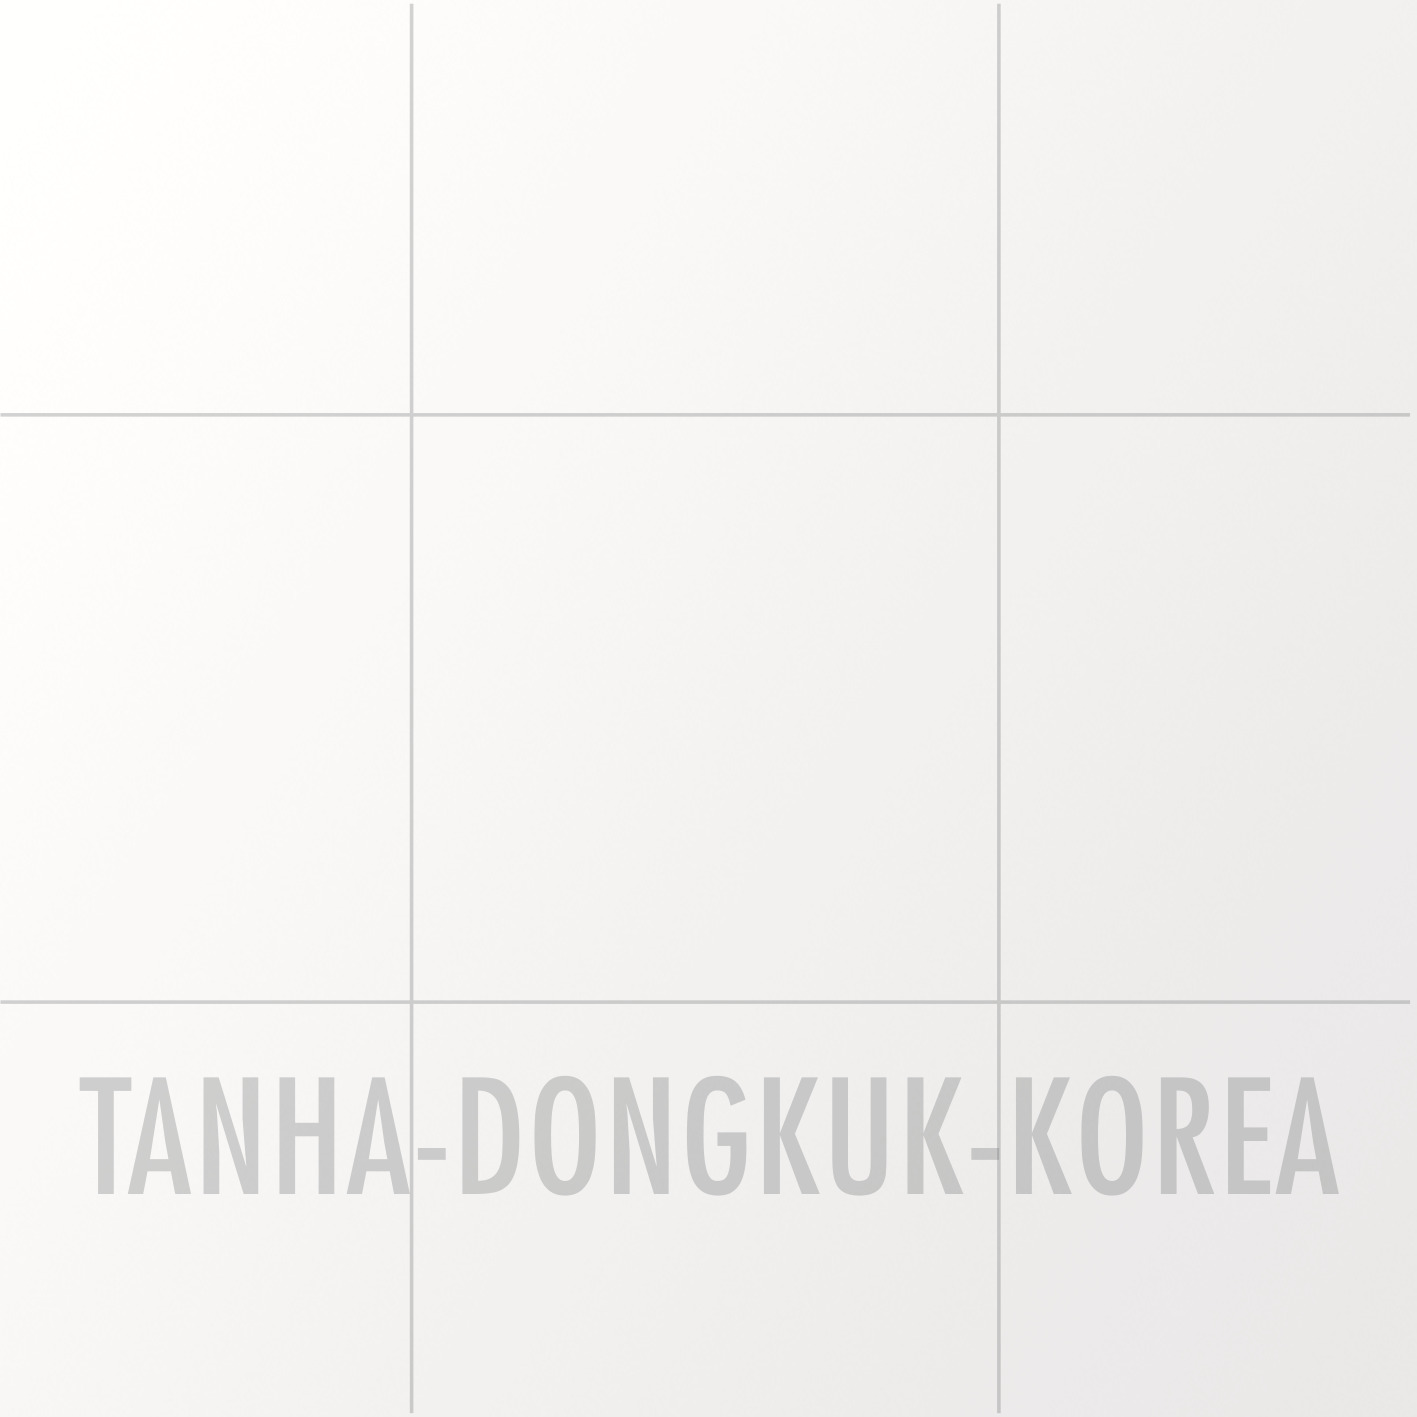 Bảng chính hãng Tanha Dongkuk Korea có in chìm logo trên mặt bảng để phân biệt với hàng giả.